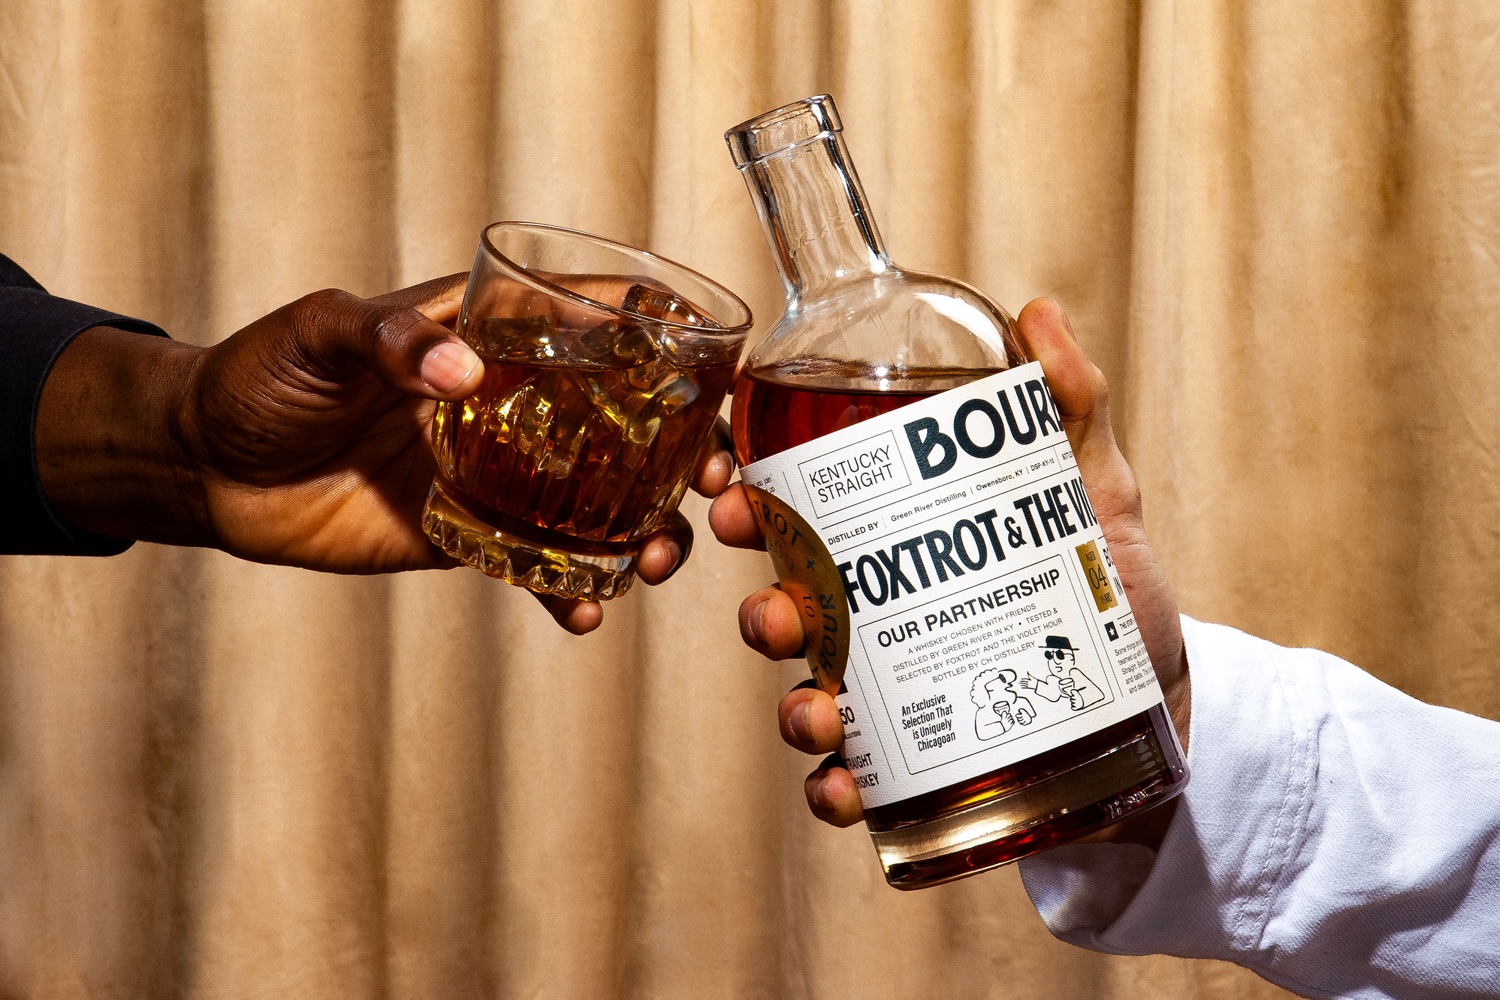 Foxtrot & The Violet Hour: Exclusive Bourbon